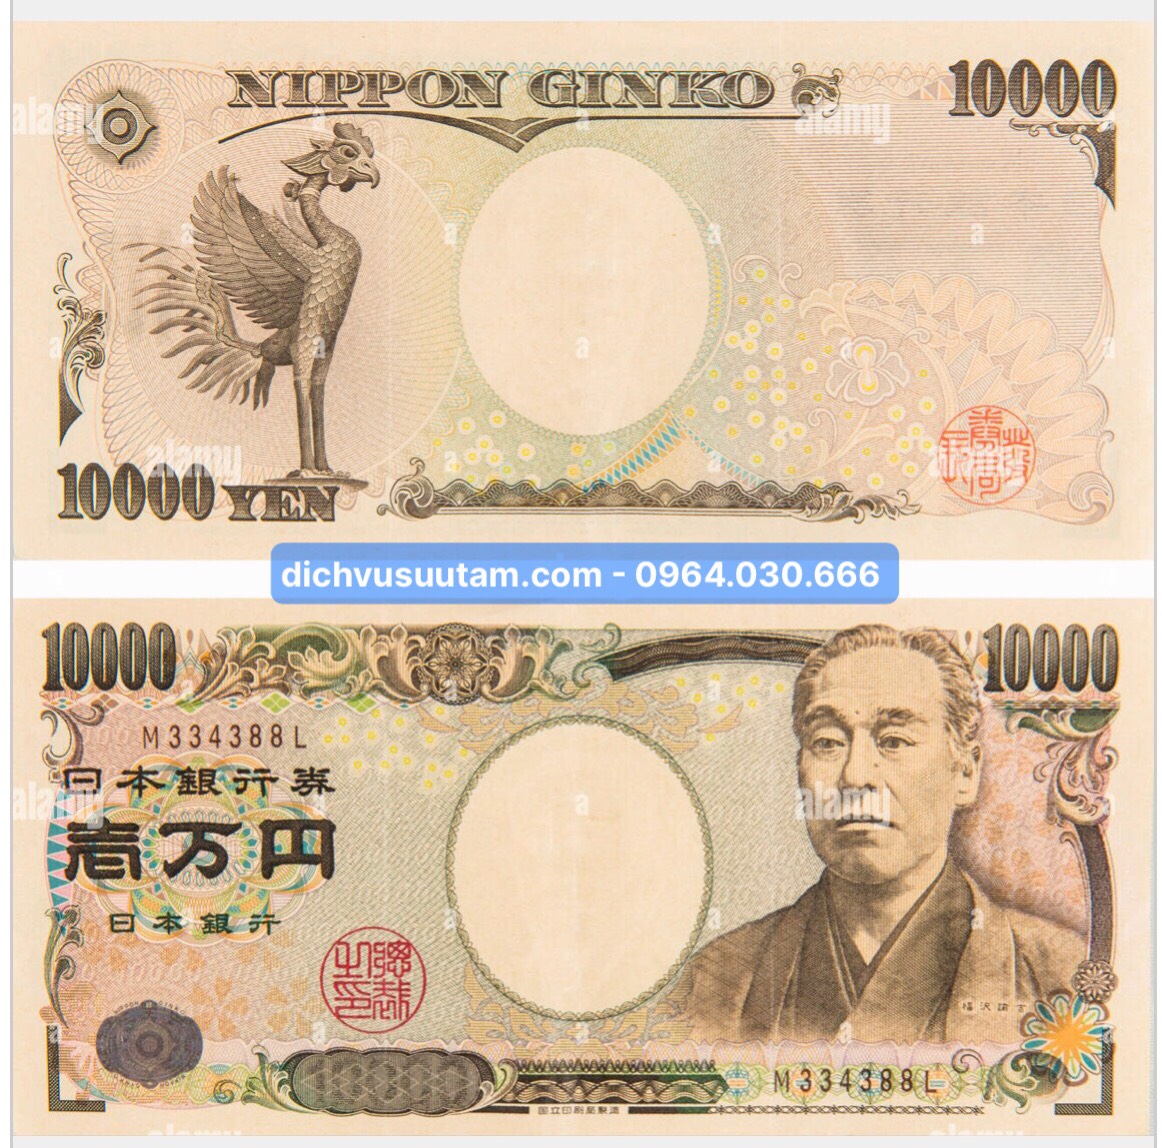 Tờ 1 Sen, 10.000 Yên Nhật Bản mệnh giá lớn nhất sưu tầm, chất lượng mới 95%